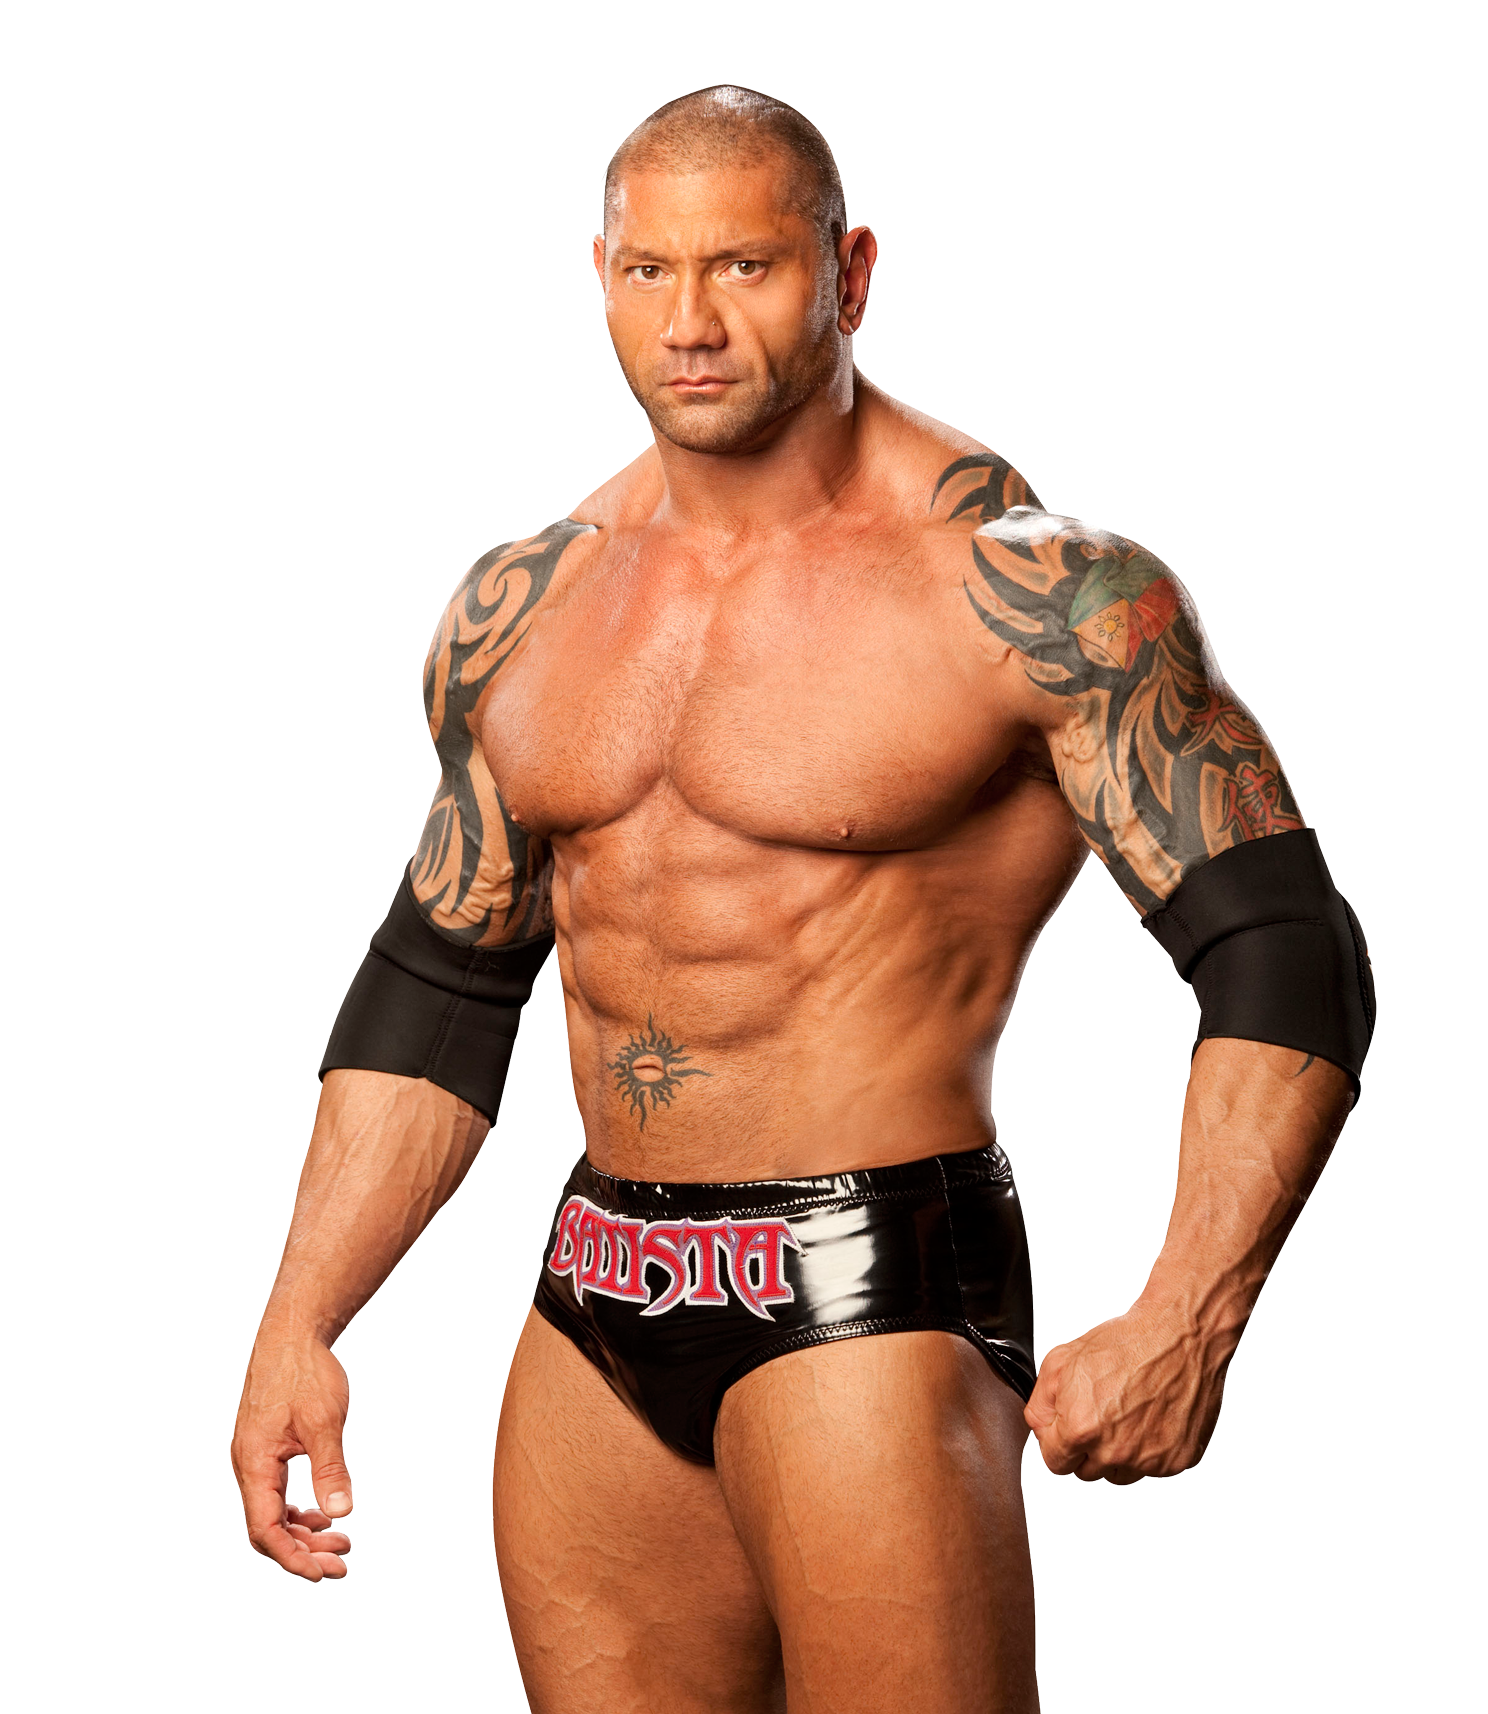 Muscular Wrestler Batista Pose PNG image